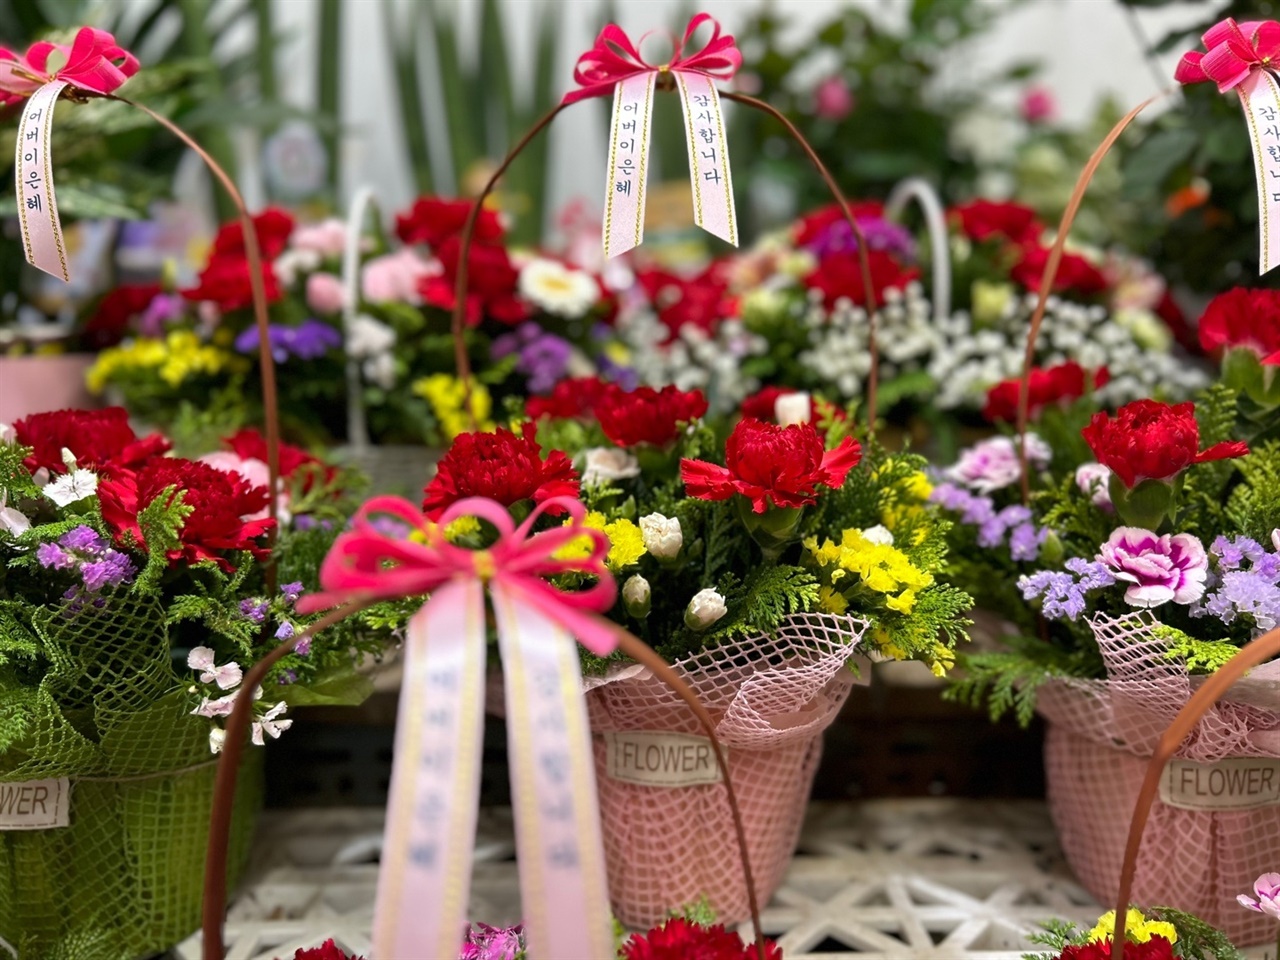 어버이날을 하루 앞두고 꽃집은 분주하다. 꽃집마다 카네이션 화분과 가슴꽃을 내놓고 손님들을 기다리고 있다.